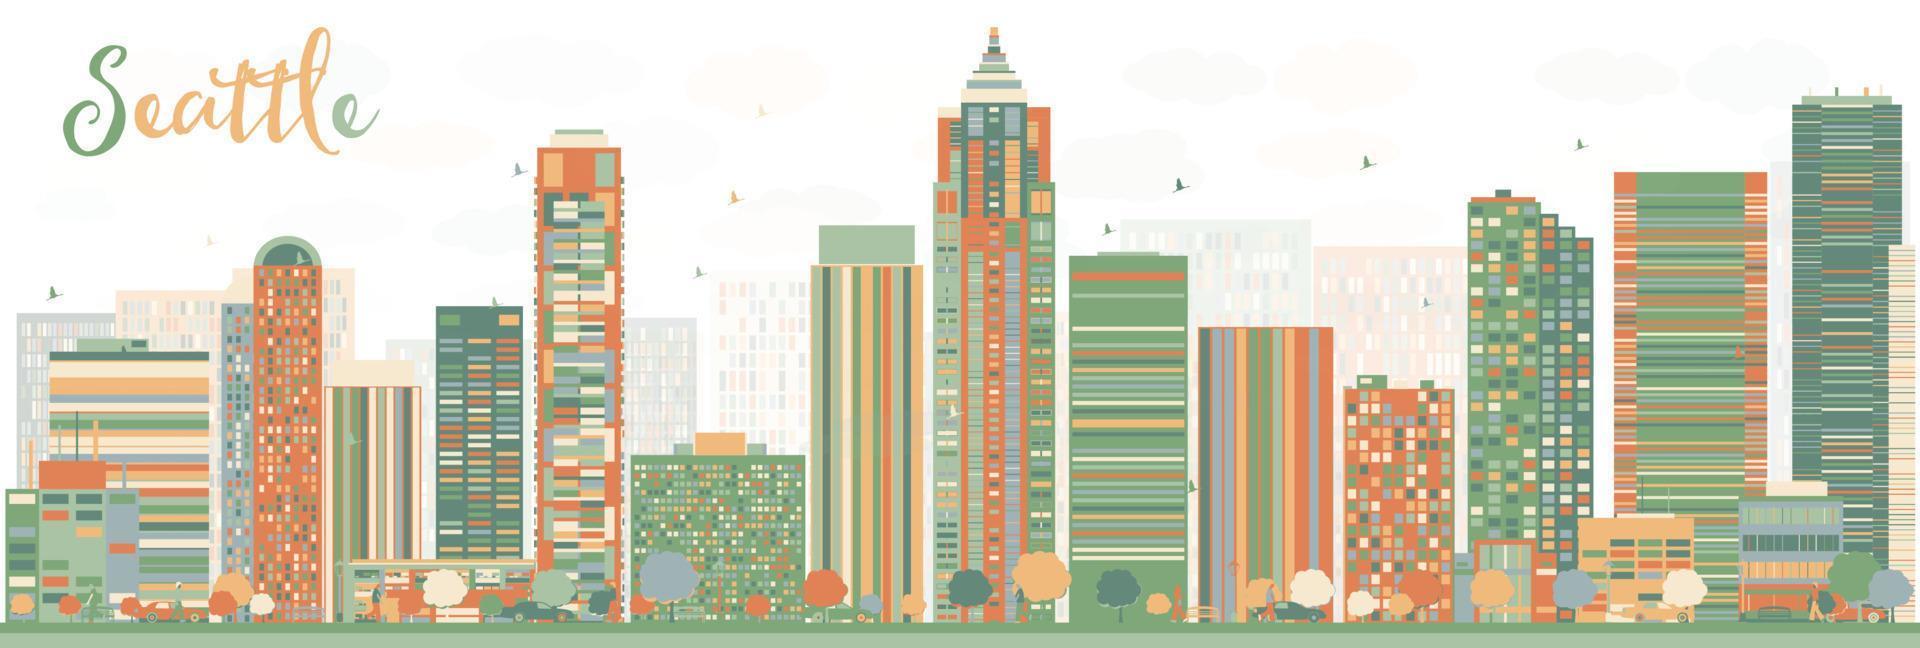 horizonte abstracto de la ciudad de seattle con edificios de color. vector